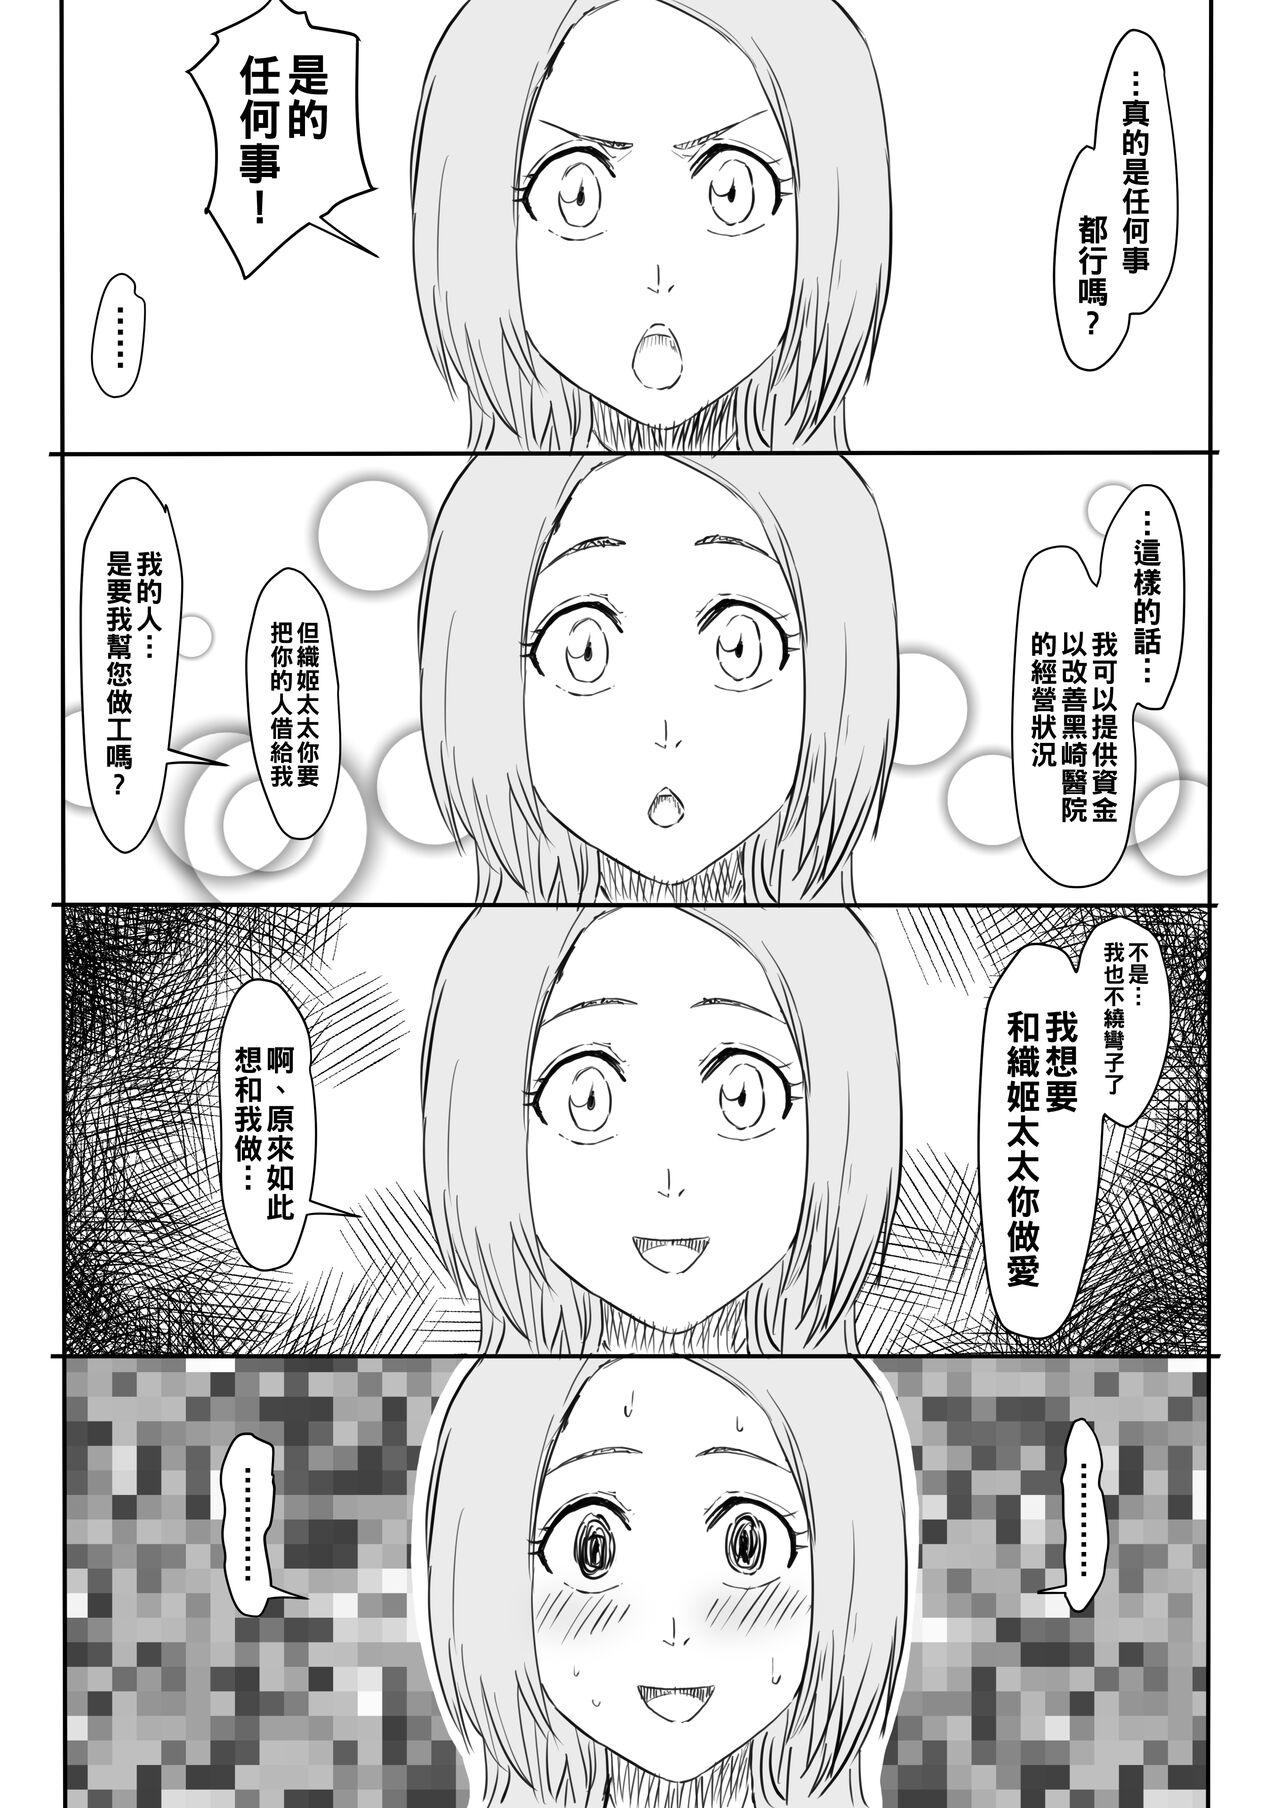 Delicia Orihime Manga - Bleach Fodendo - Picture 3